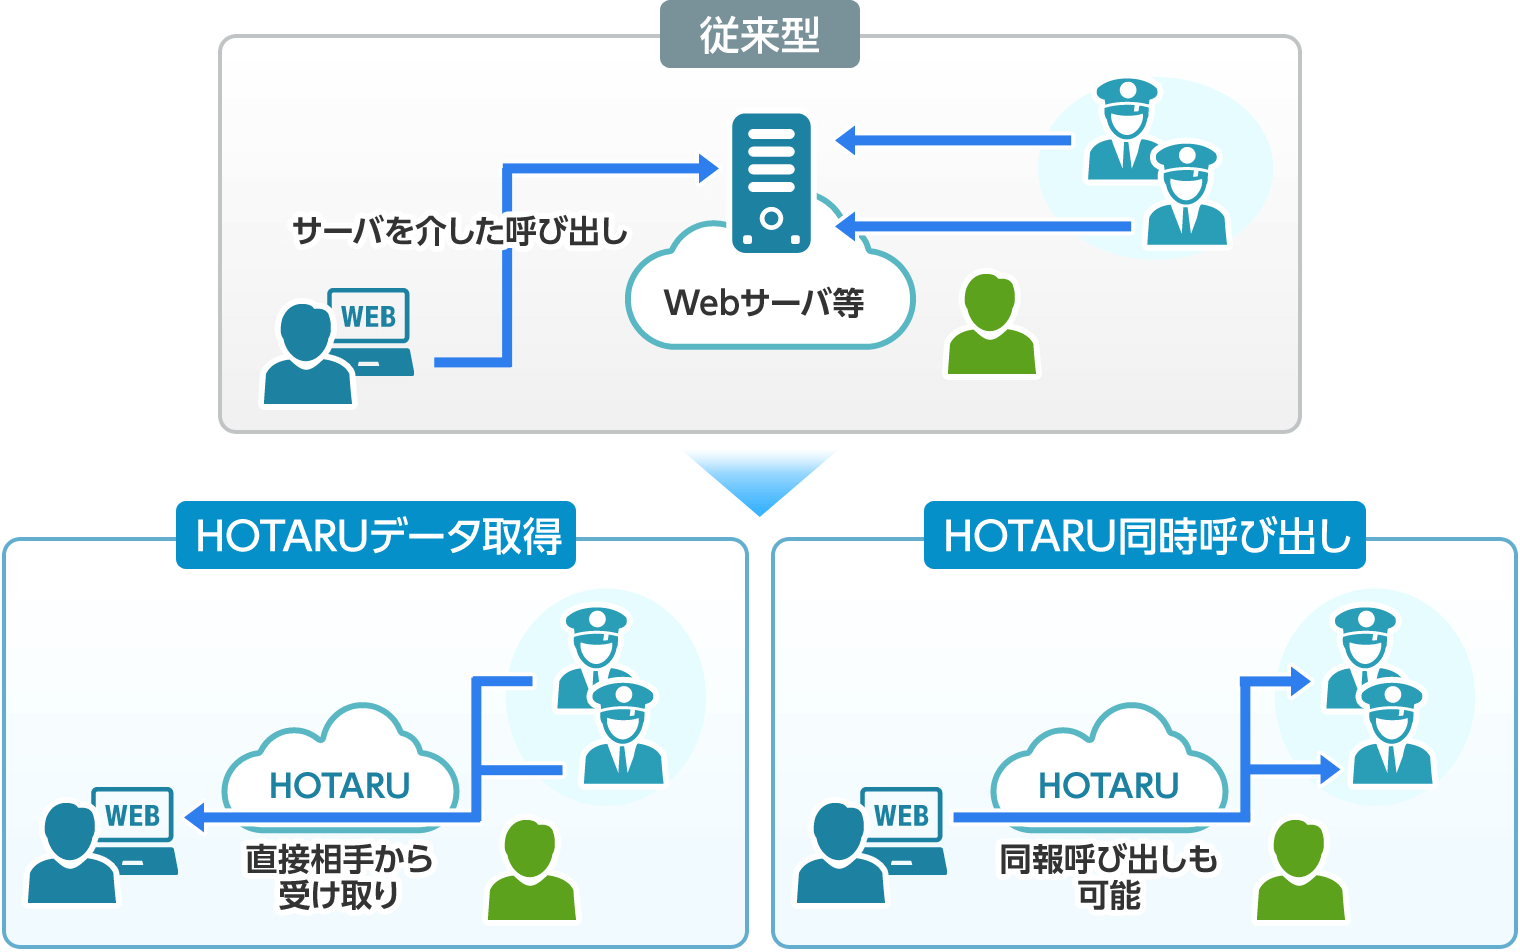 従来型のシステムとHOTARUが実現するシステムの比較図です。従来型の環境下ではユーザも相手もWebサーバを介したやり取りしか出来ませんでした。HOTARUを提供することで相手からデータを直接取得することや、同報呼び出しが可能になります。